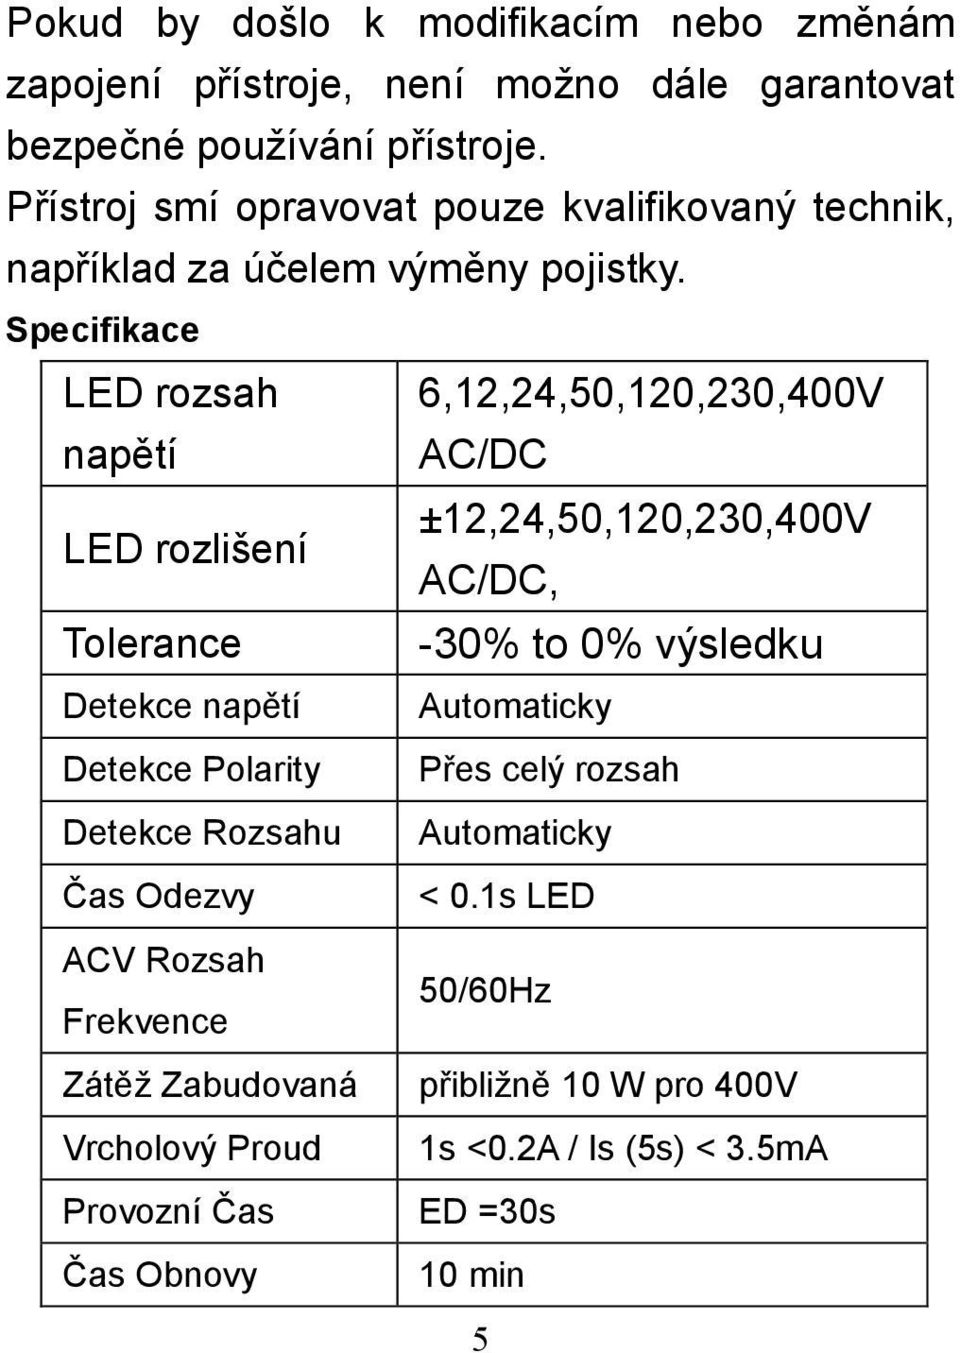 Specifikace LED rozsah 6,12,24,50,120,230,400V napětí AC/DC ±12,24,50,120,230,400V LED rozlišení AC/DC, Tolerance -30% to 0% výsledku Detekce napětí